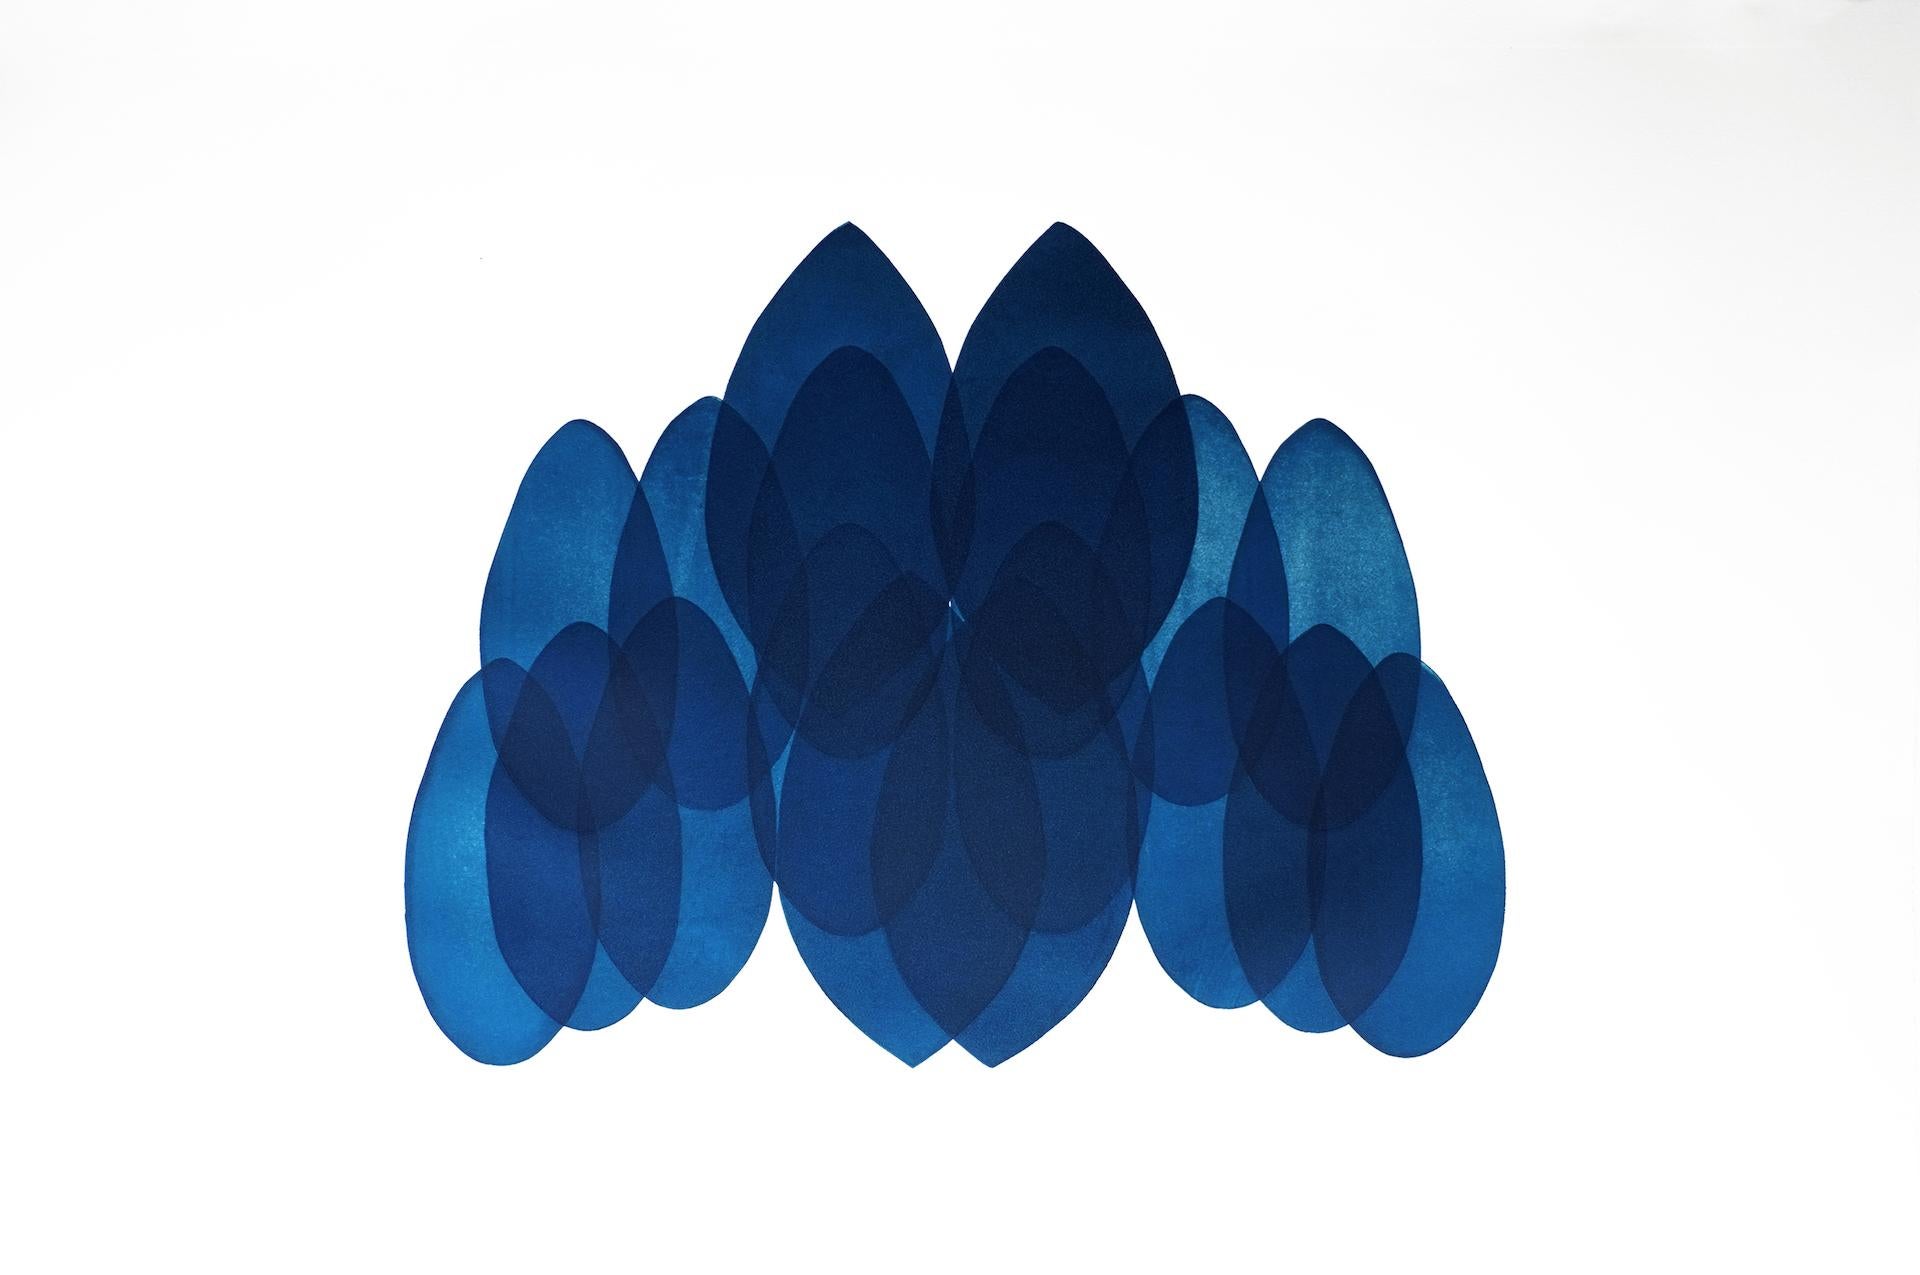 NV24, Originale zeitgenössische Kunst, abstrakte blaue und weiße Kunst, geometrische Kunst 